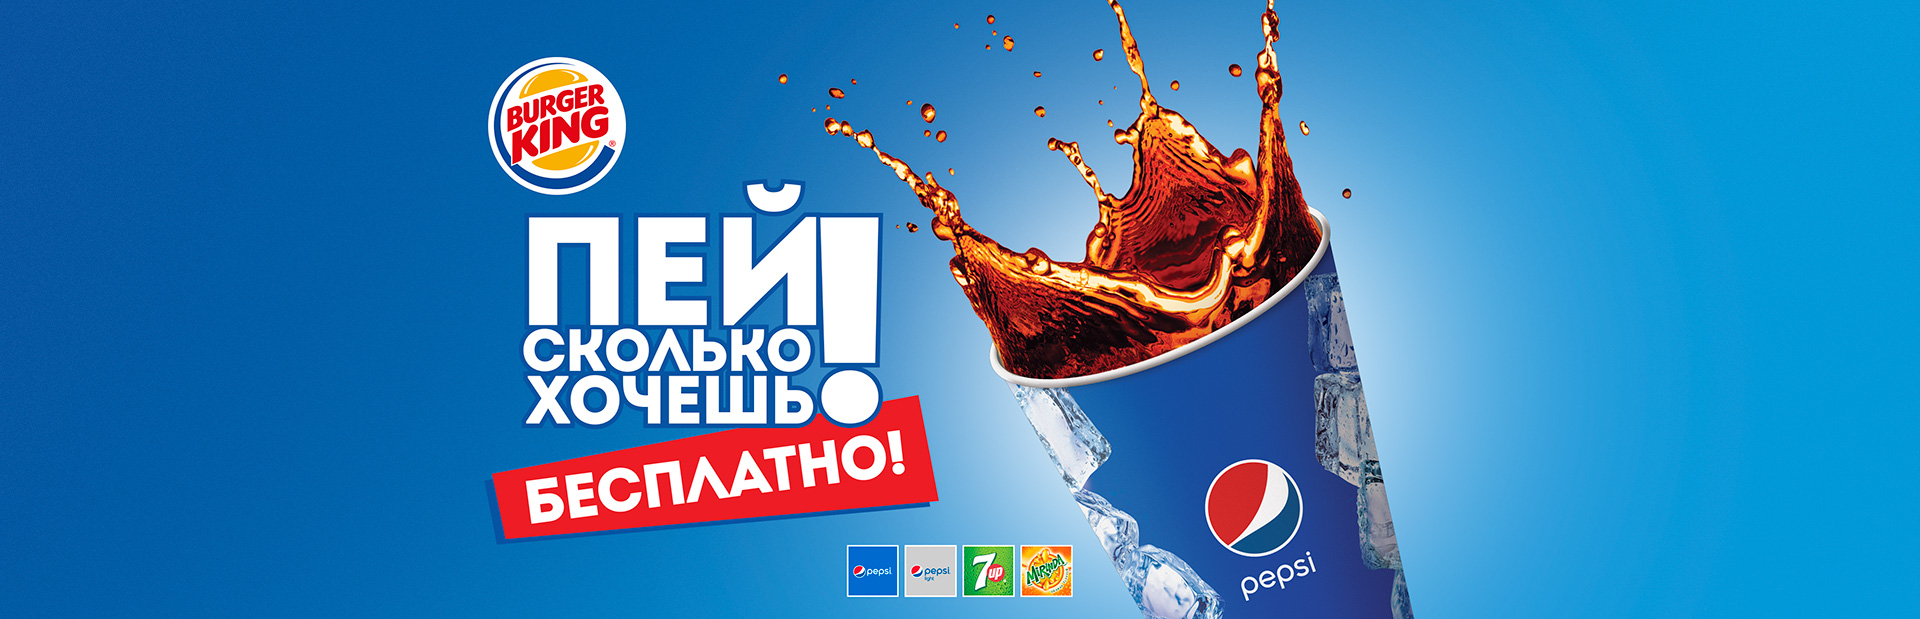 Рекламная акция Pepsi «Пей сколько хочешь в сети BURGER KING»